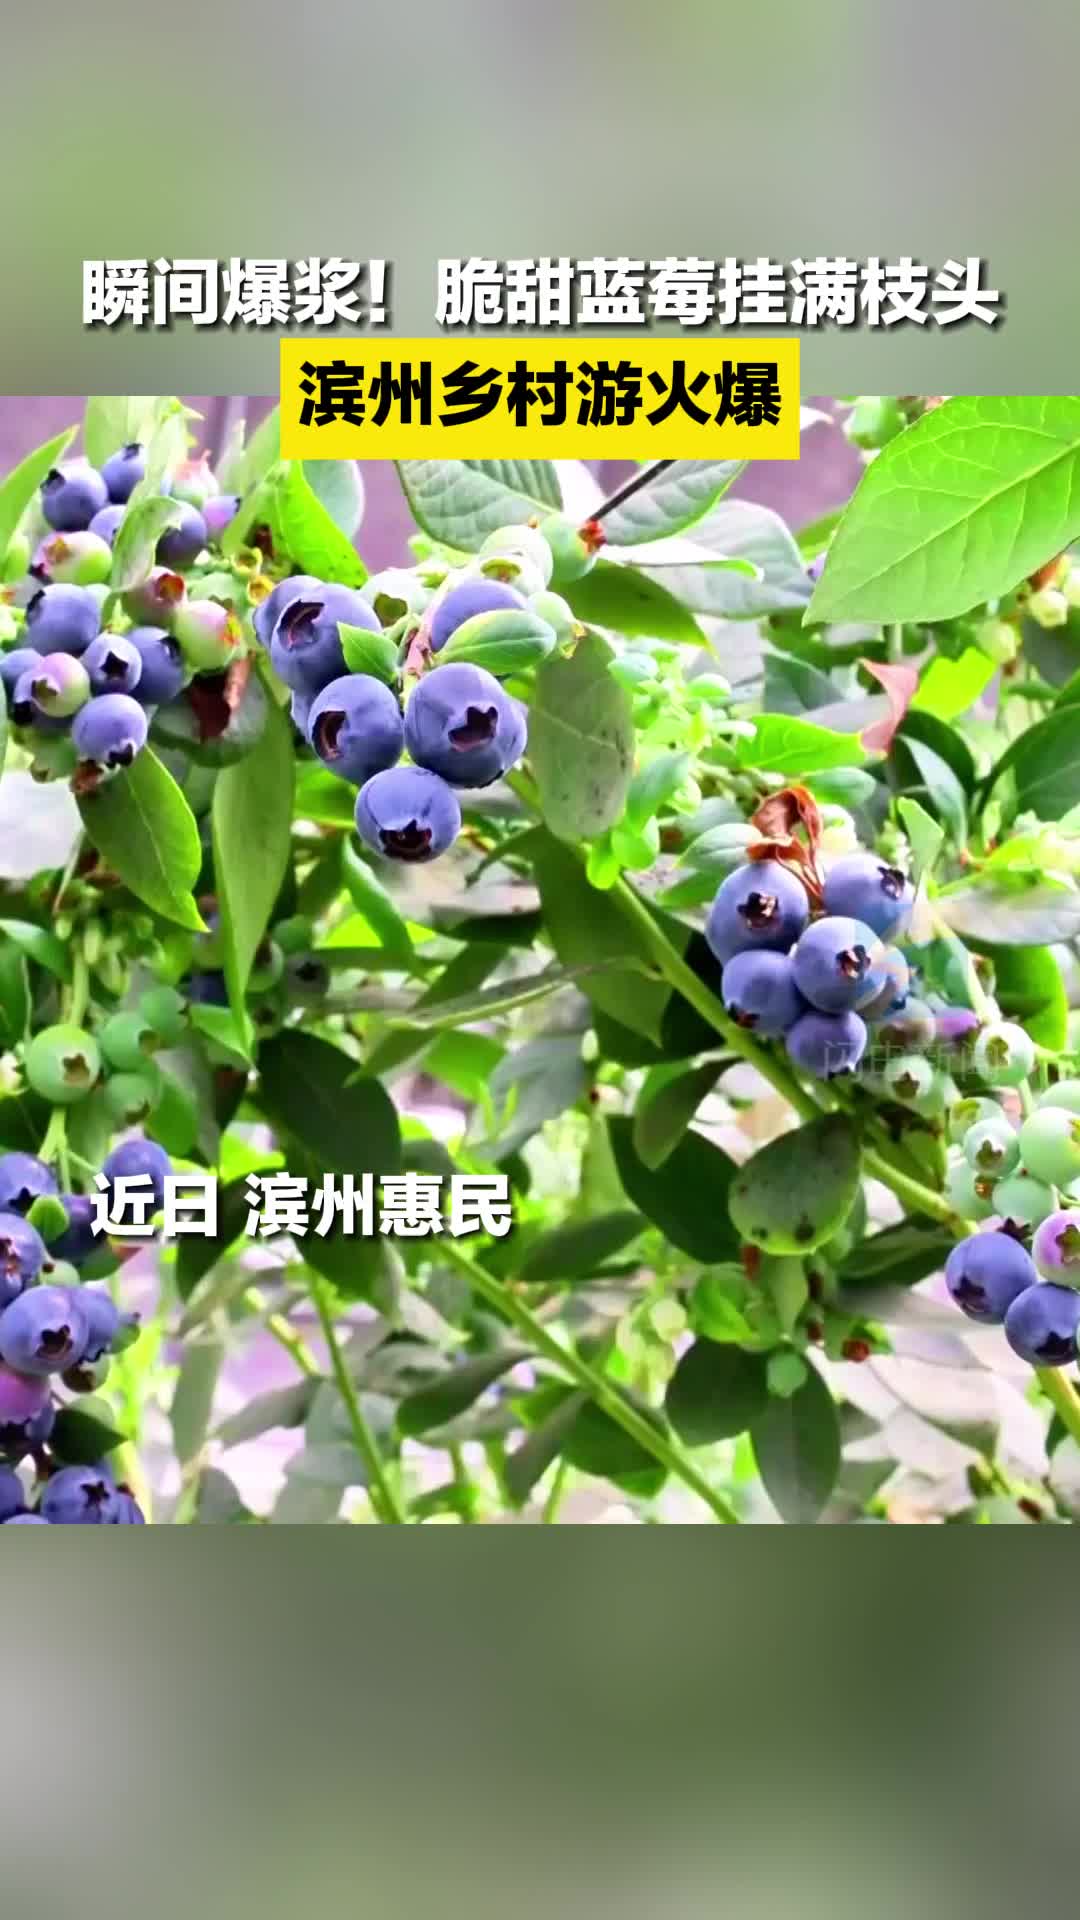 瞬间爆浆！脆甜蓝莓挂满枝头 滨州乡村游火爆